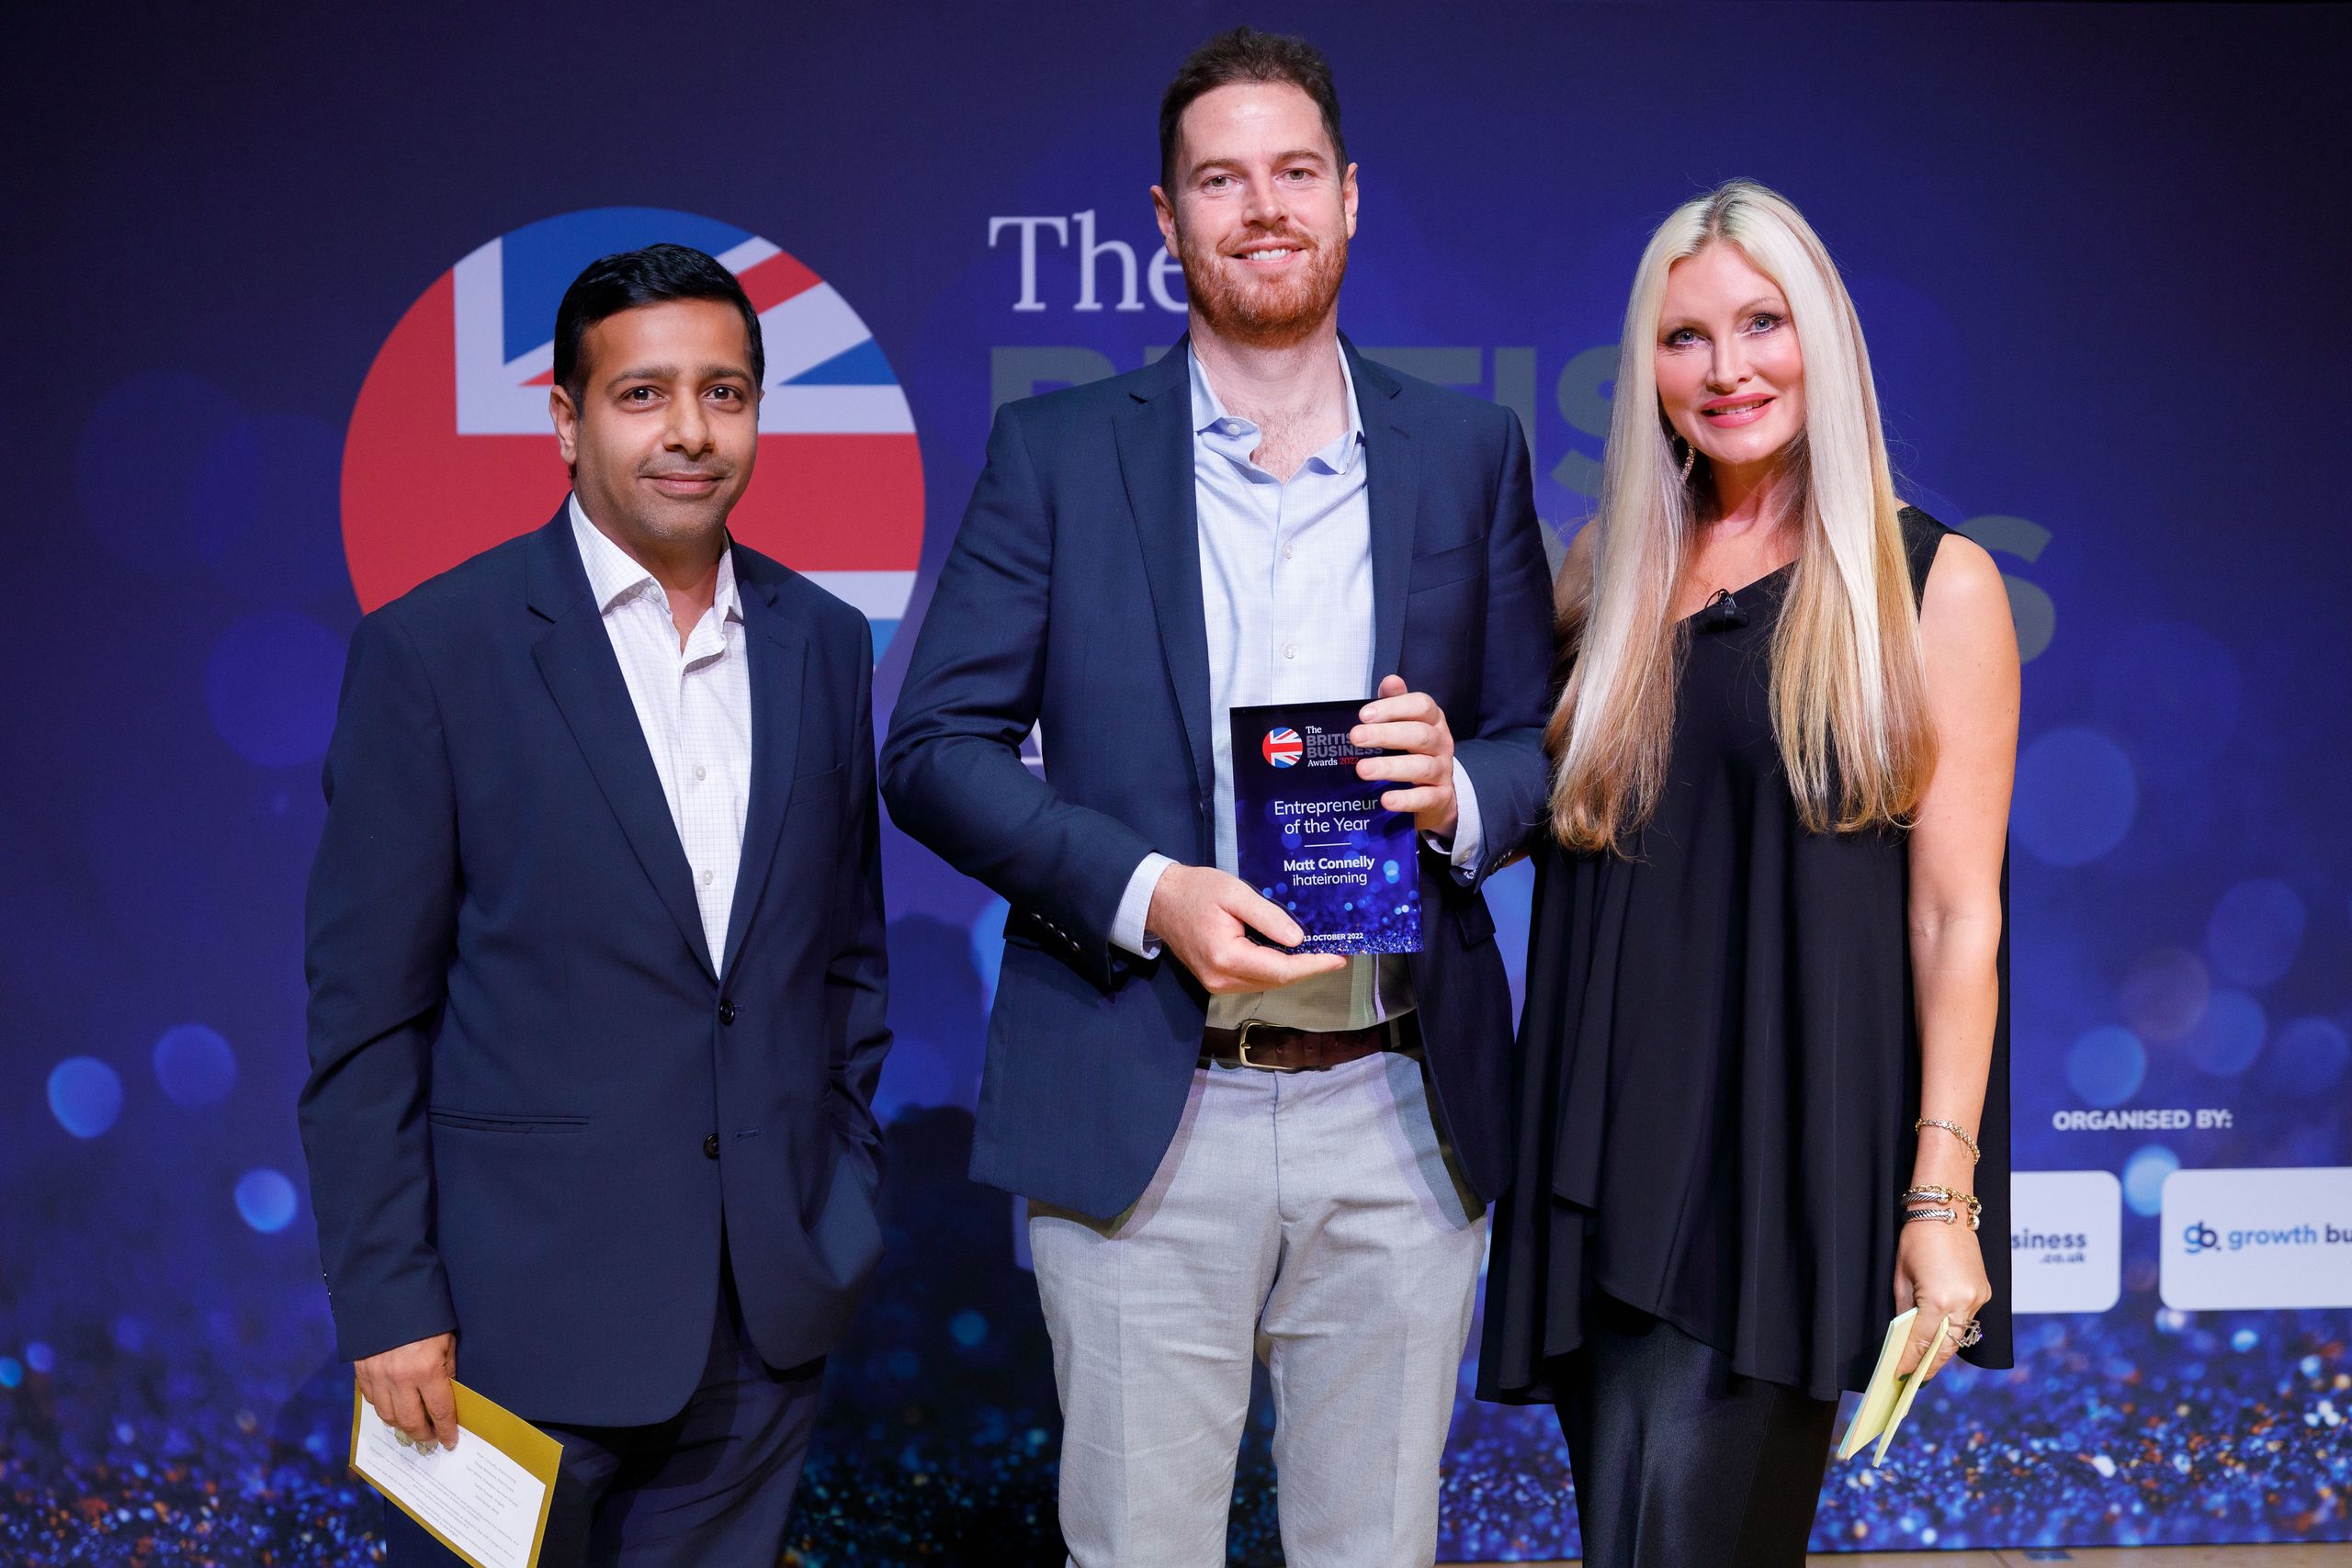 Matt Connelly wins British Business Award